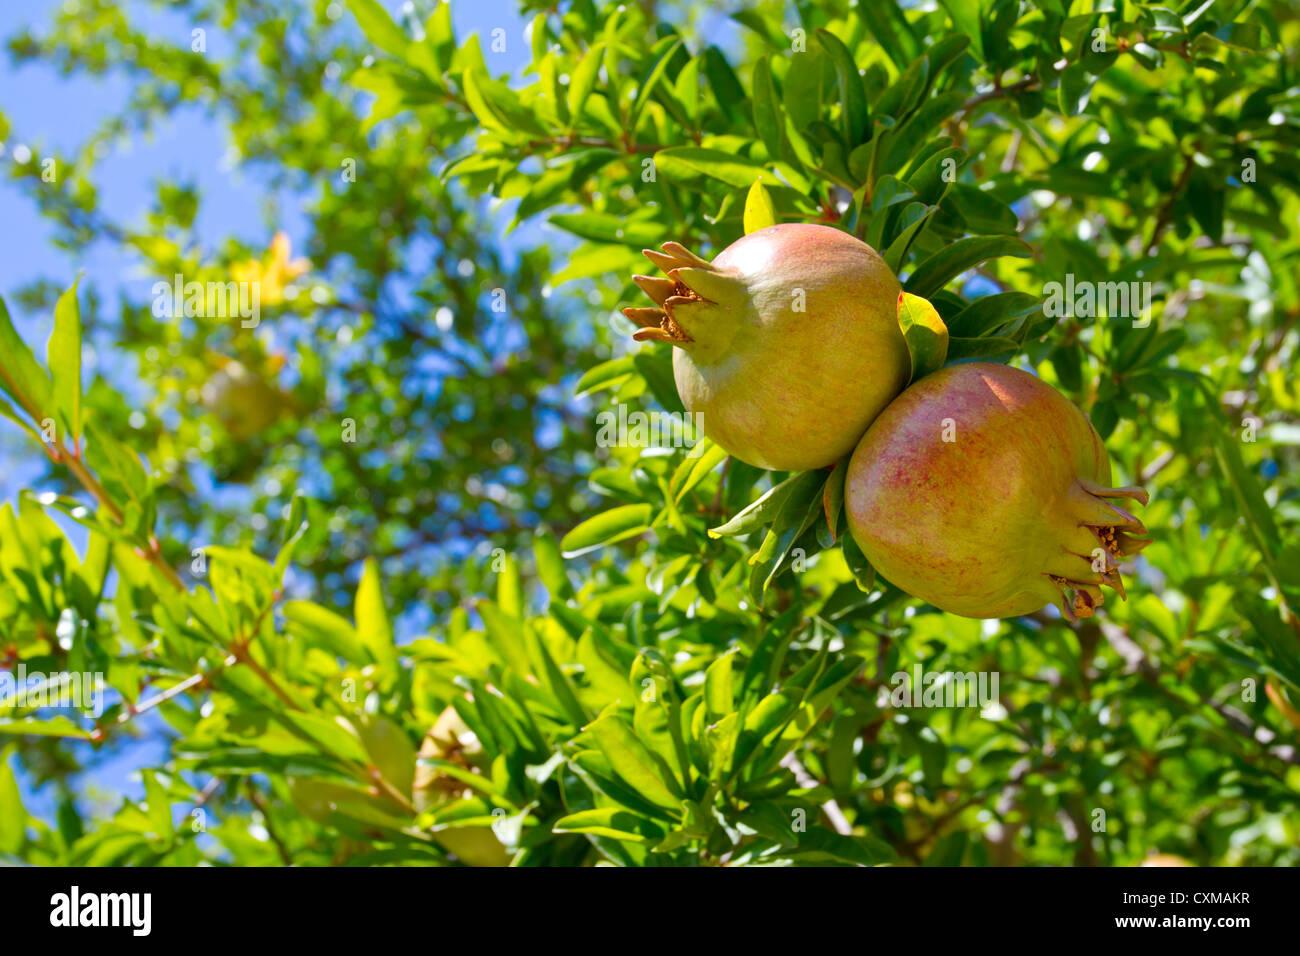 Fruits de Grenade sur l'arbre avec des feuilles vertes Banque D'Images